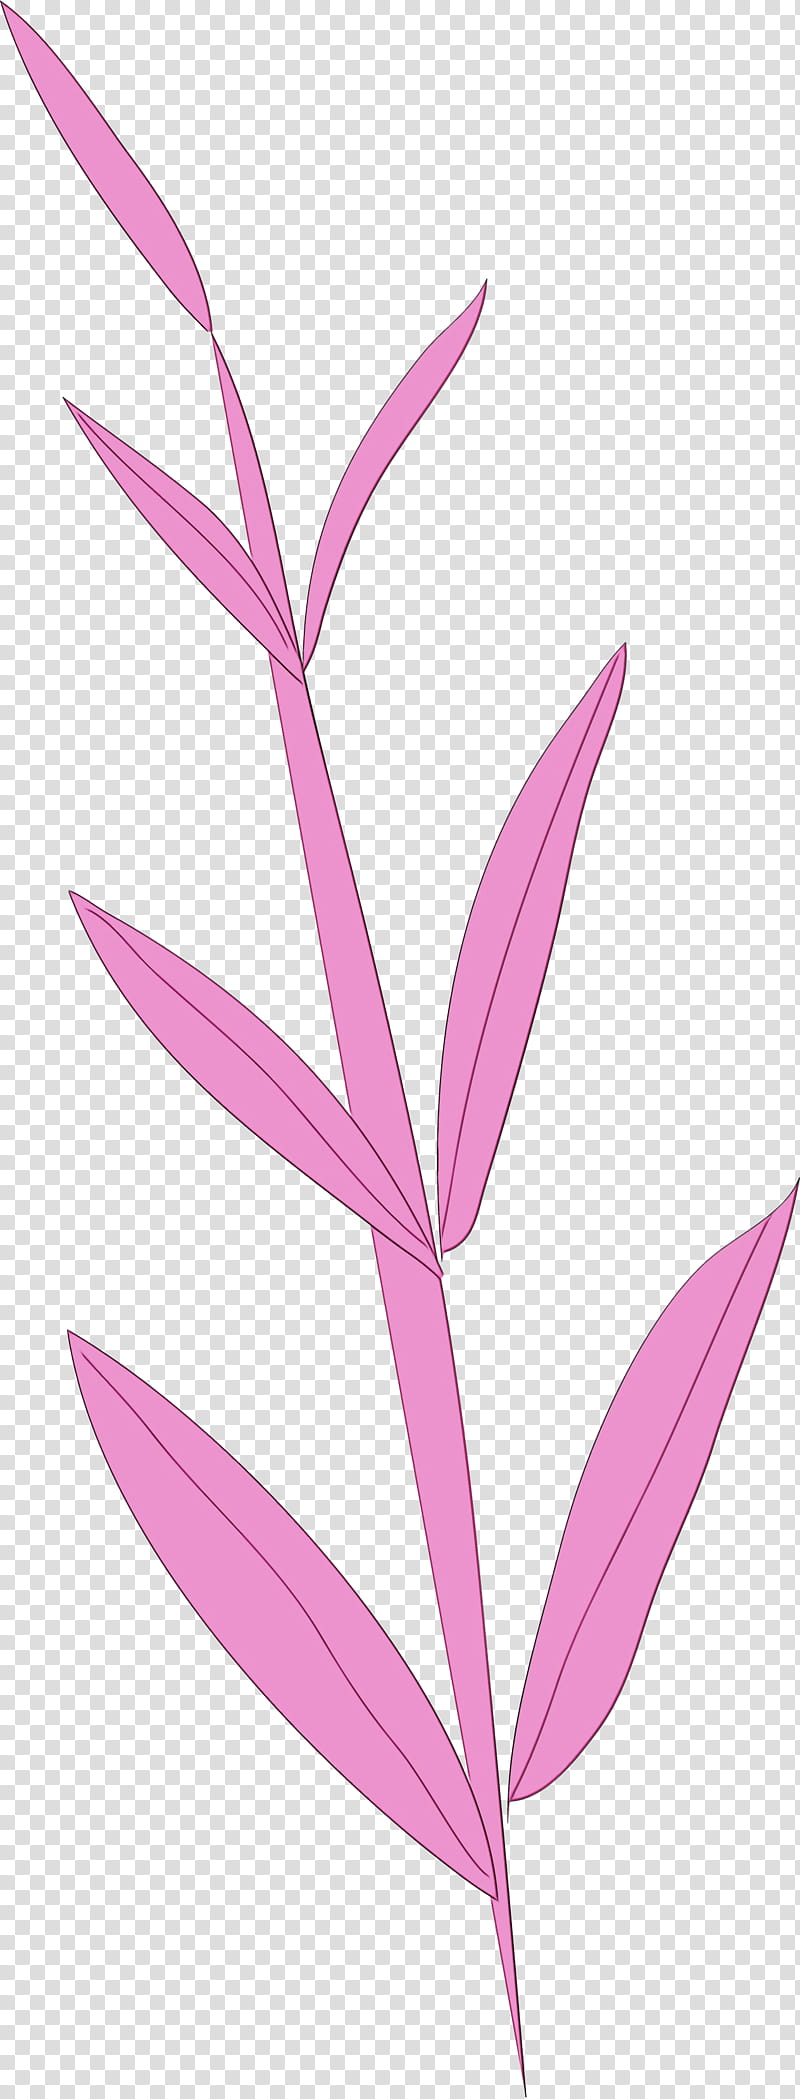 plant stem petal leaf pink m line, Simple Leaf, Simple Leaf Drawing, Simple Leaf Outline, Watercolor, Paint, Wet Ink, Flower transparent background PNG clipart